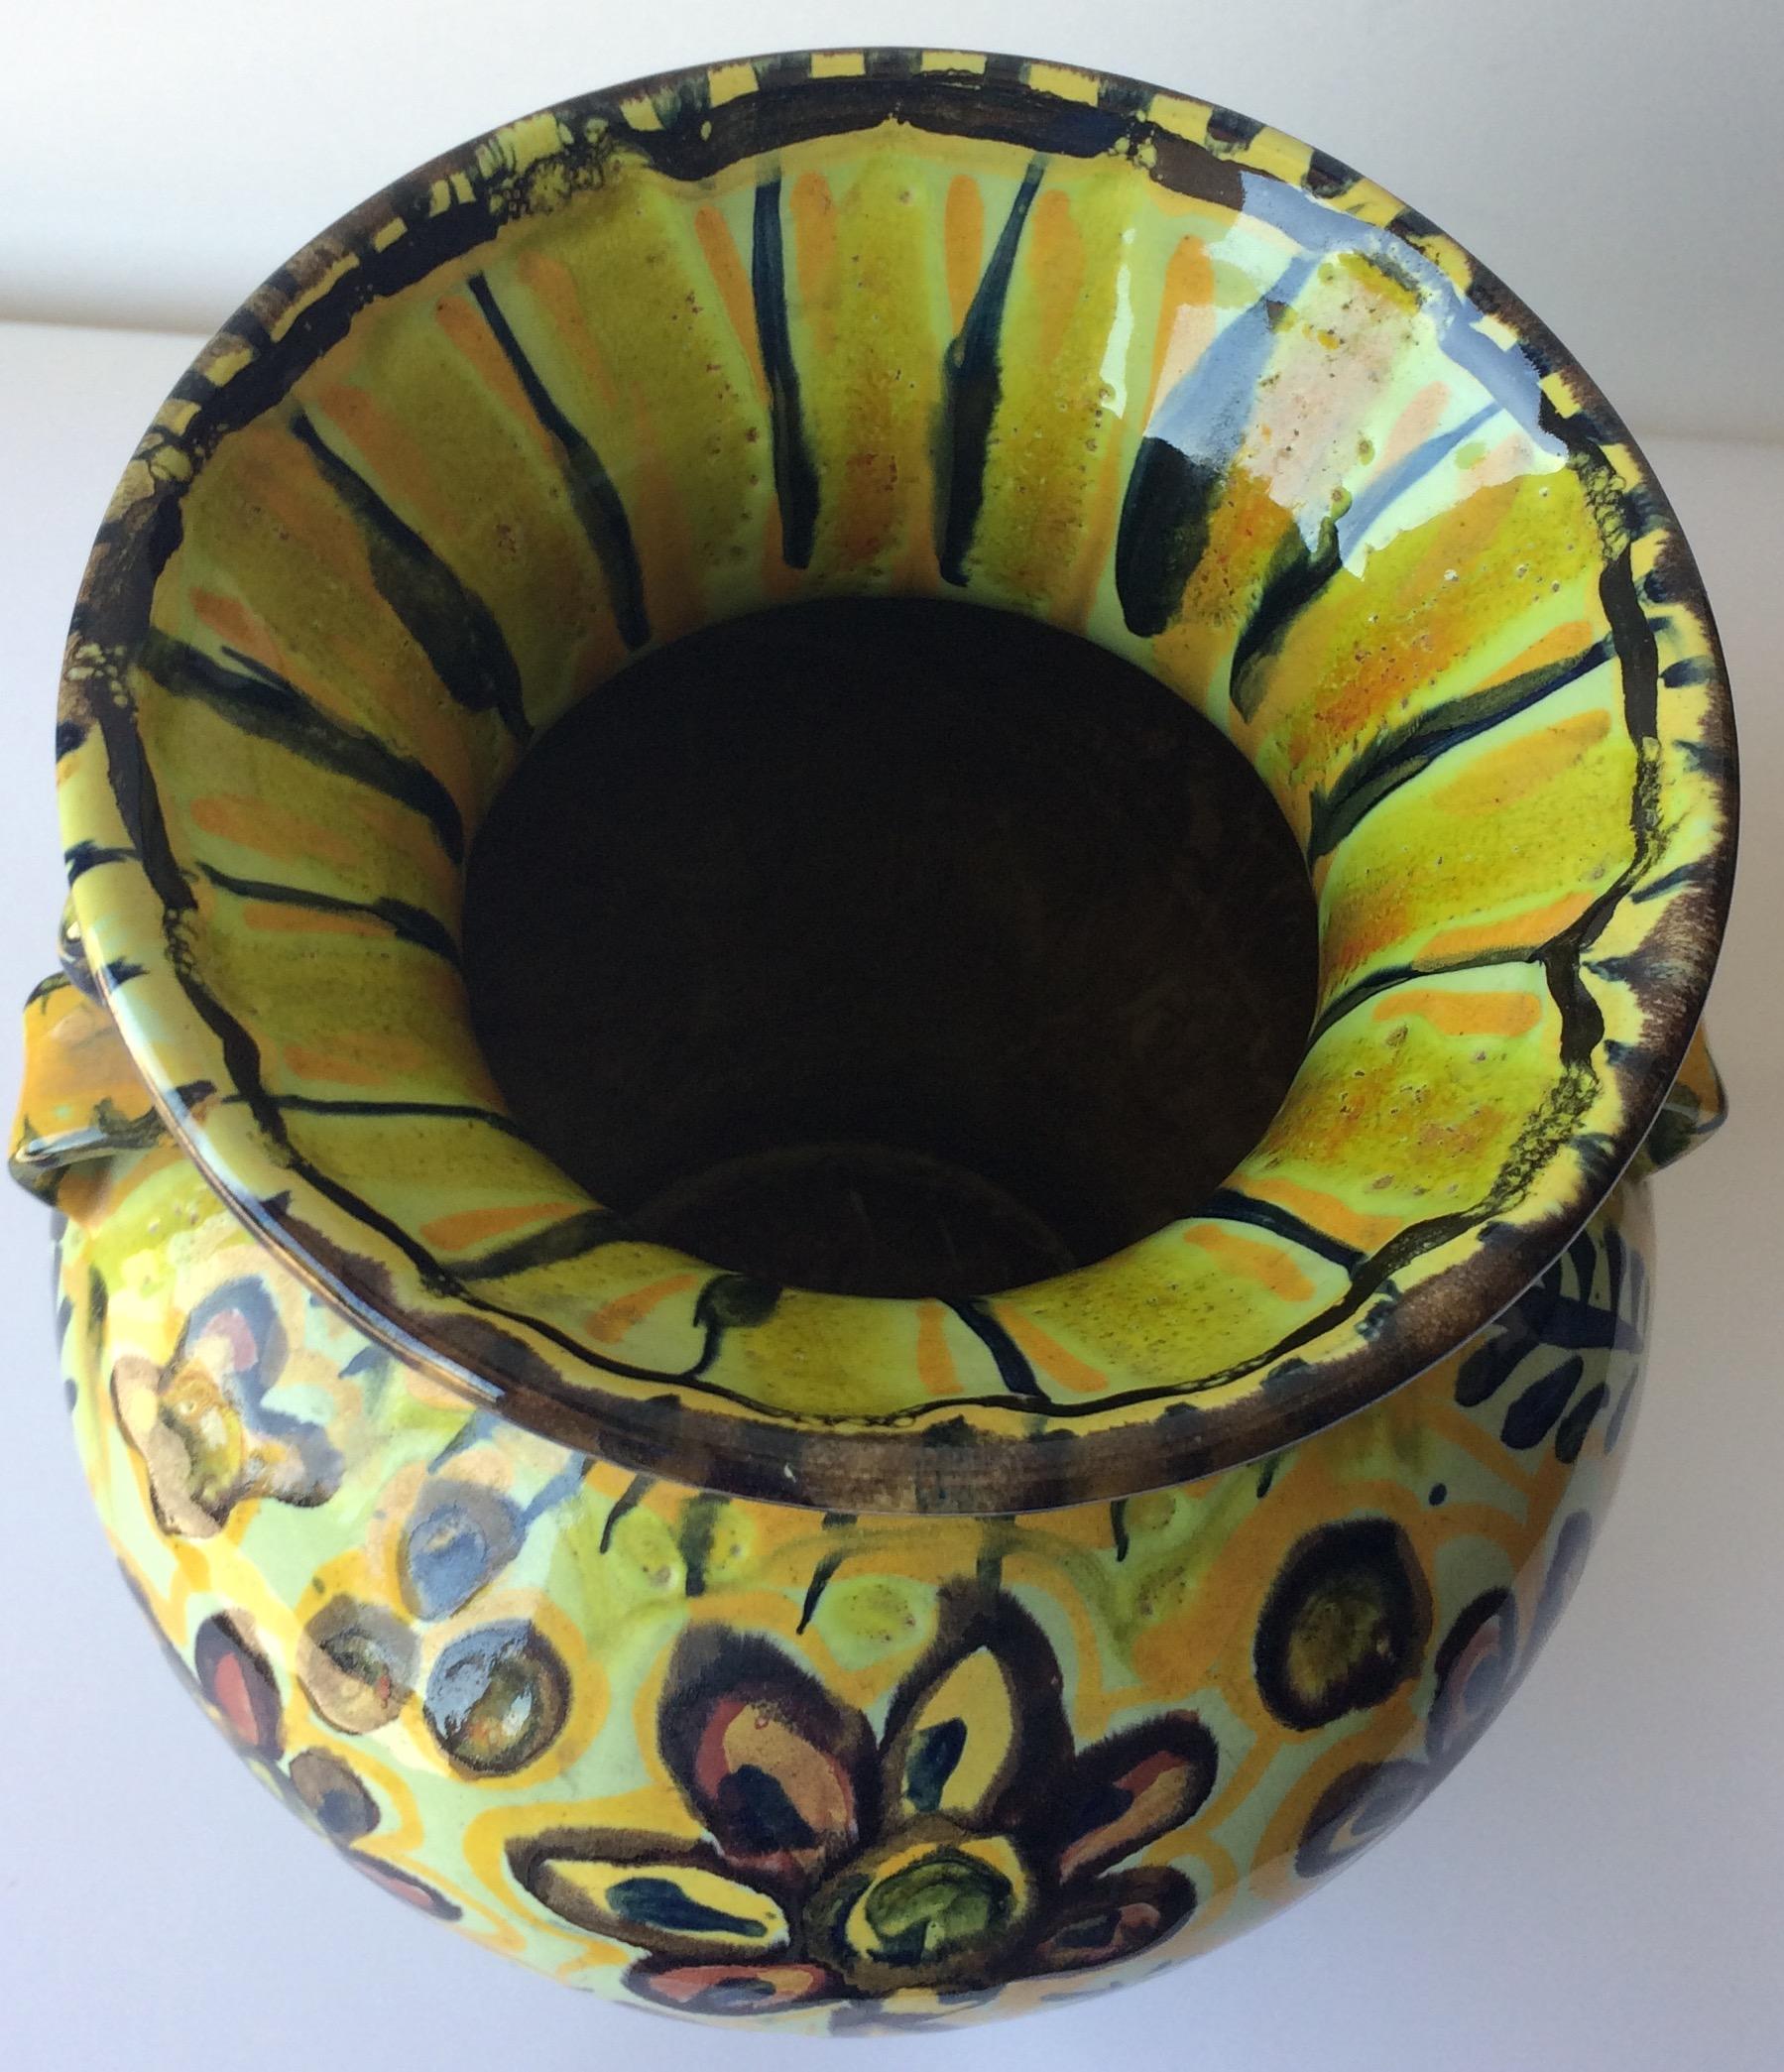 Vase éblouissant en céramique émaillée, le jaune pâle primaire et les motifs floraux attirent vraiment l'attention. Fabriqué à Quimper, en France, par Keraluc Pottery Studio. 

Il peut rehausser n'importe quelle étagère, table, crédence ou comptoir,